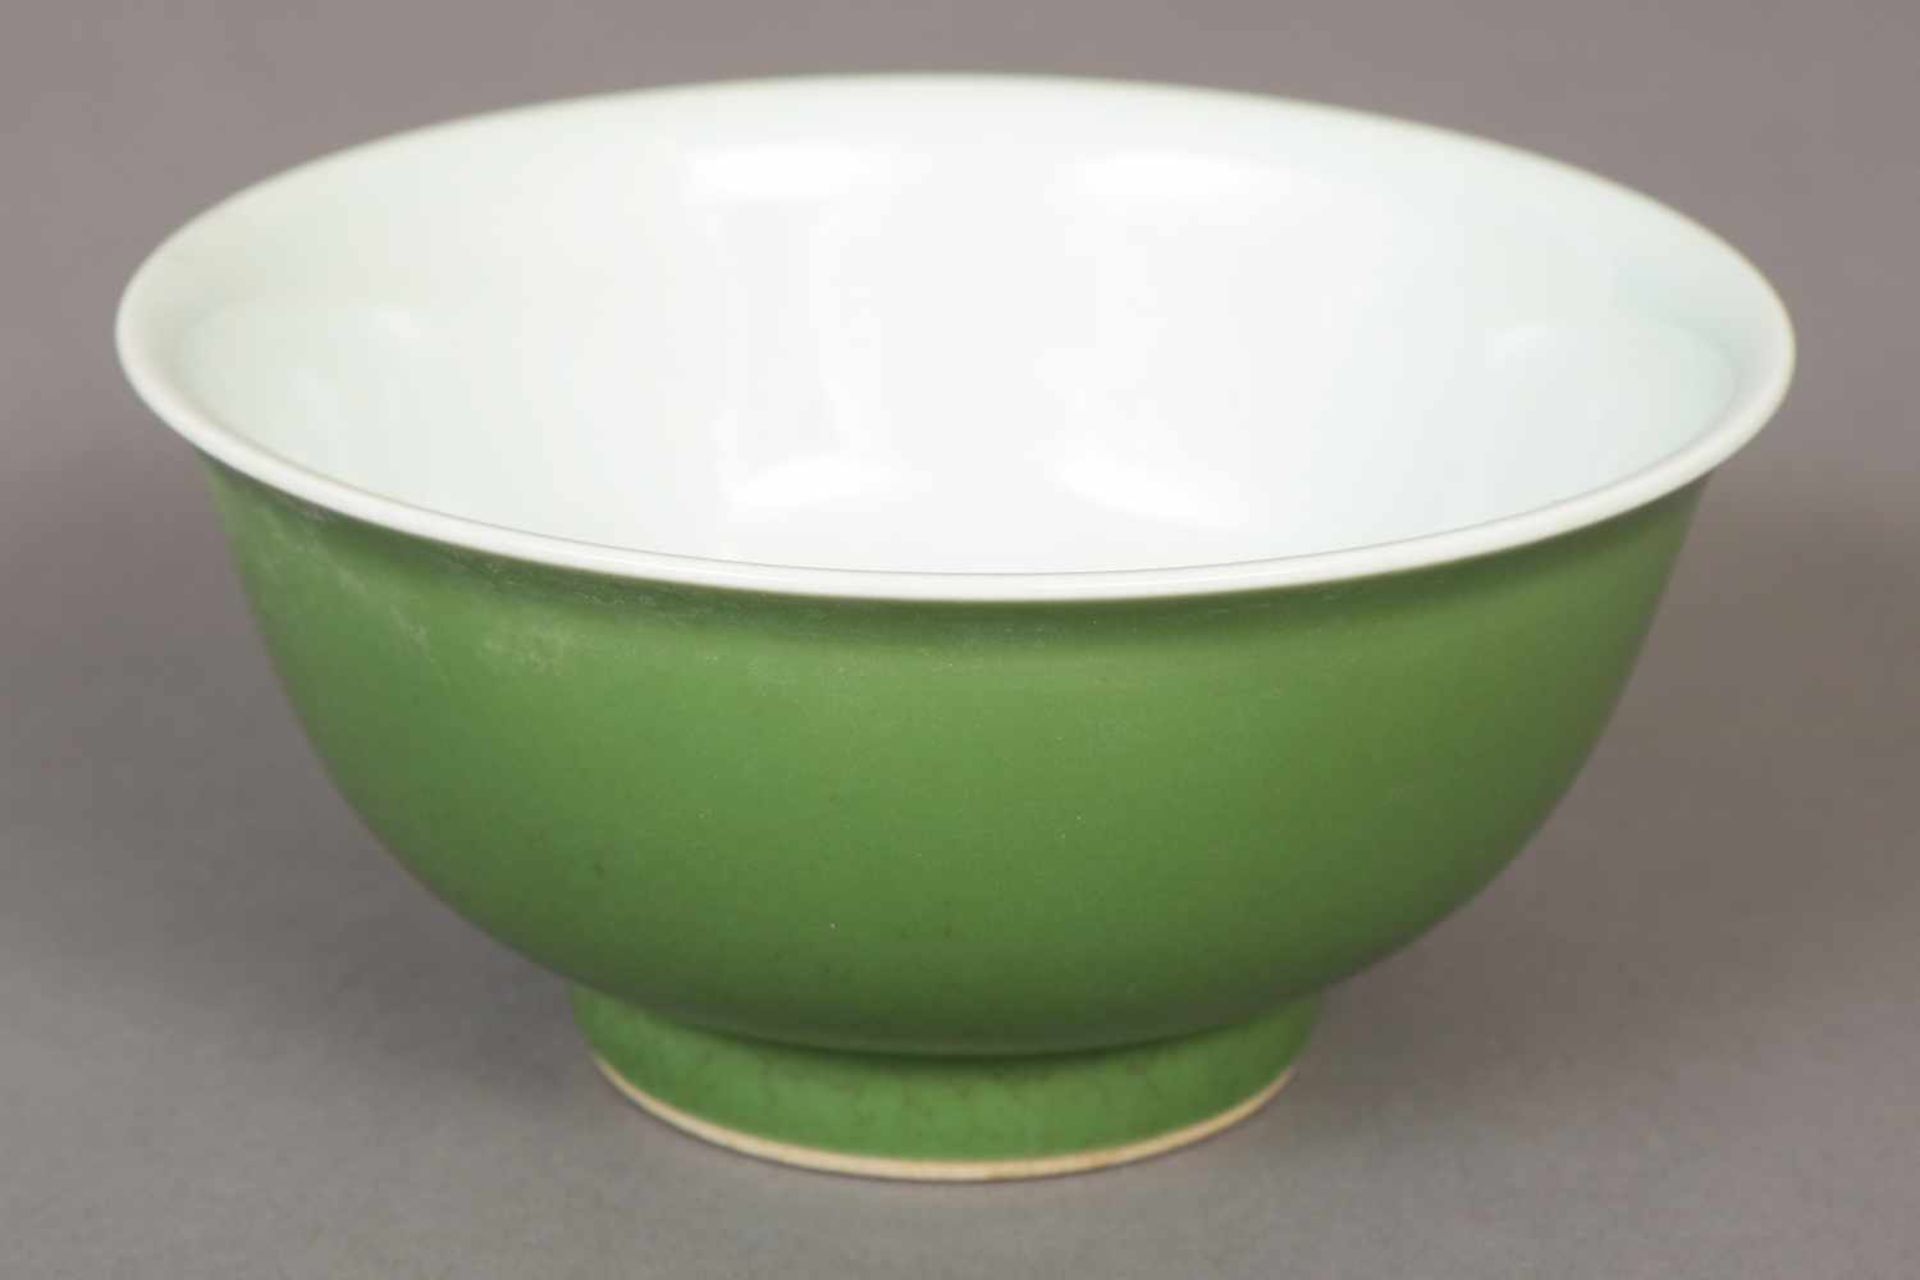 Chinesische Porzellanschale mit Jade-grüner Glasurrunde Schale auf rundem Standring mit leicht